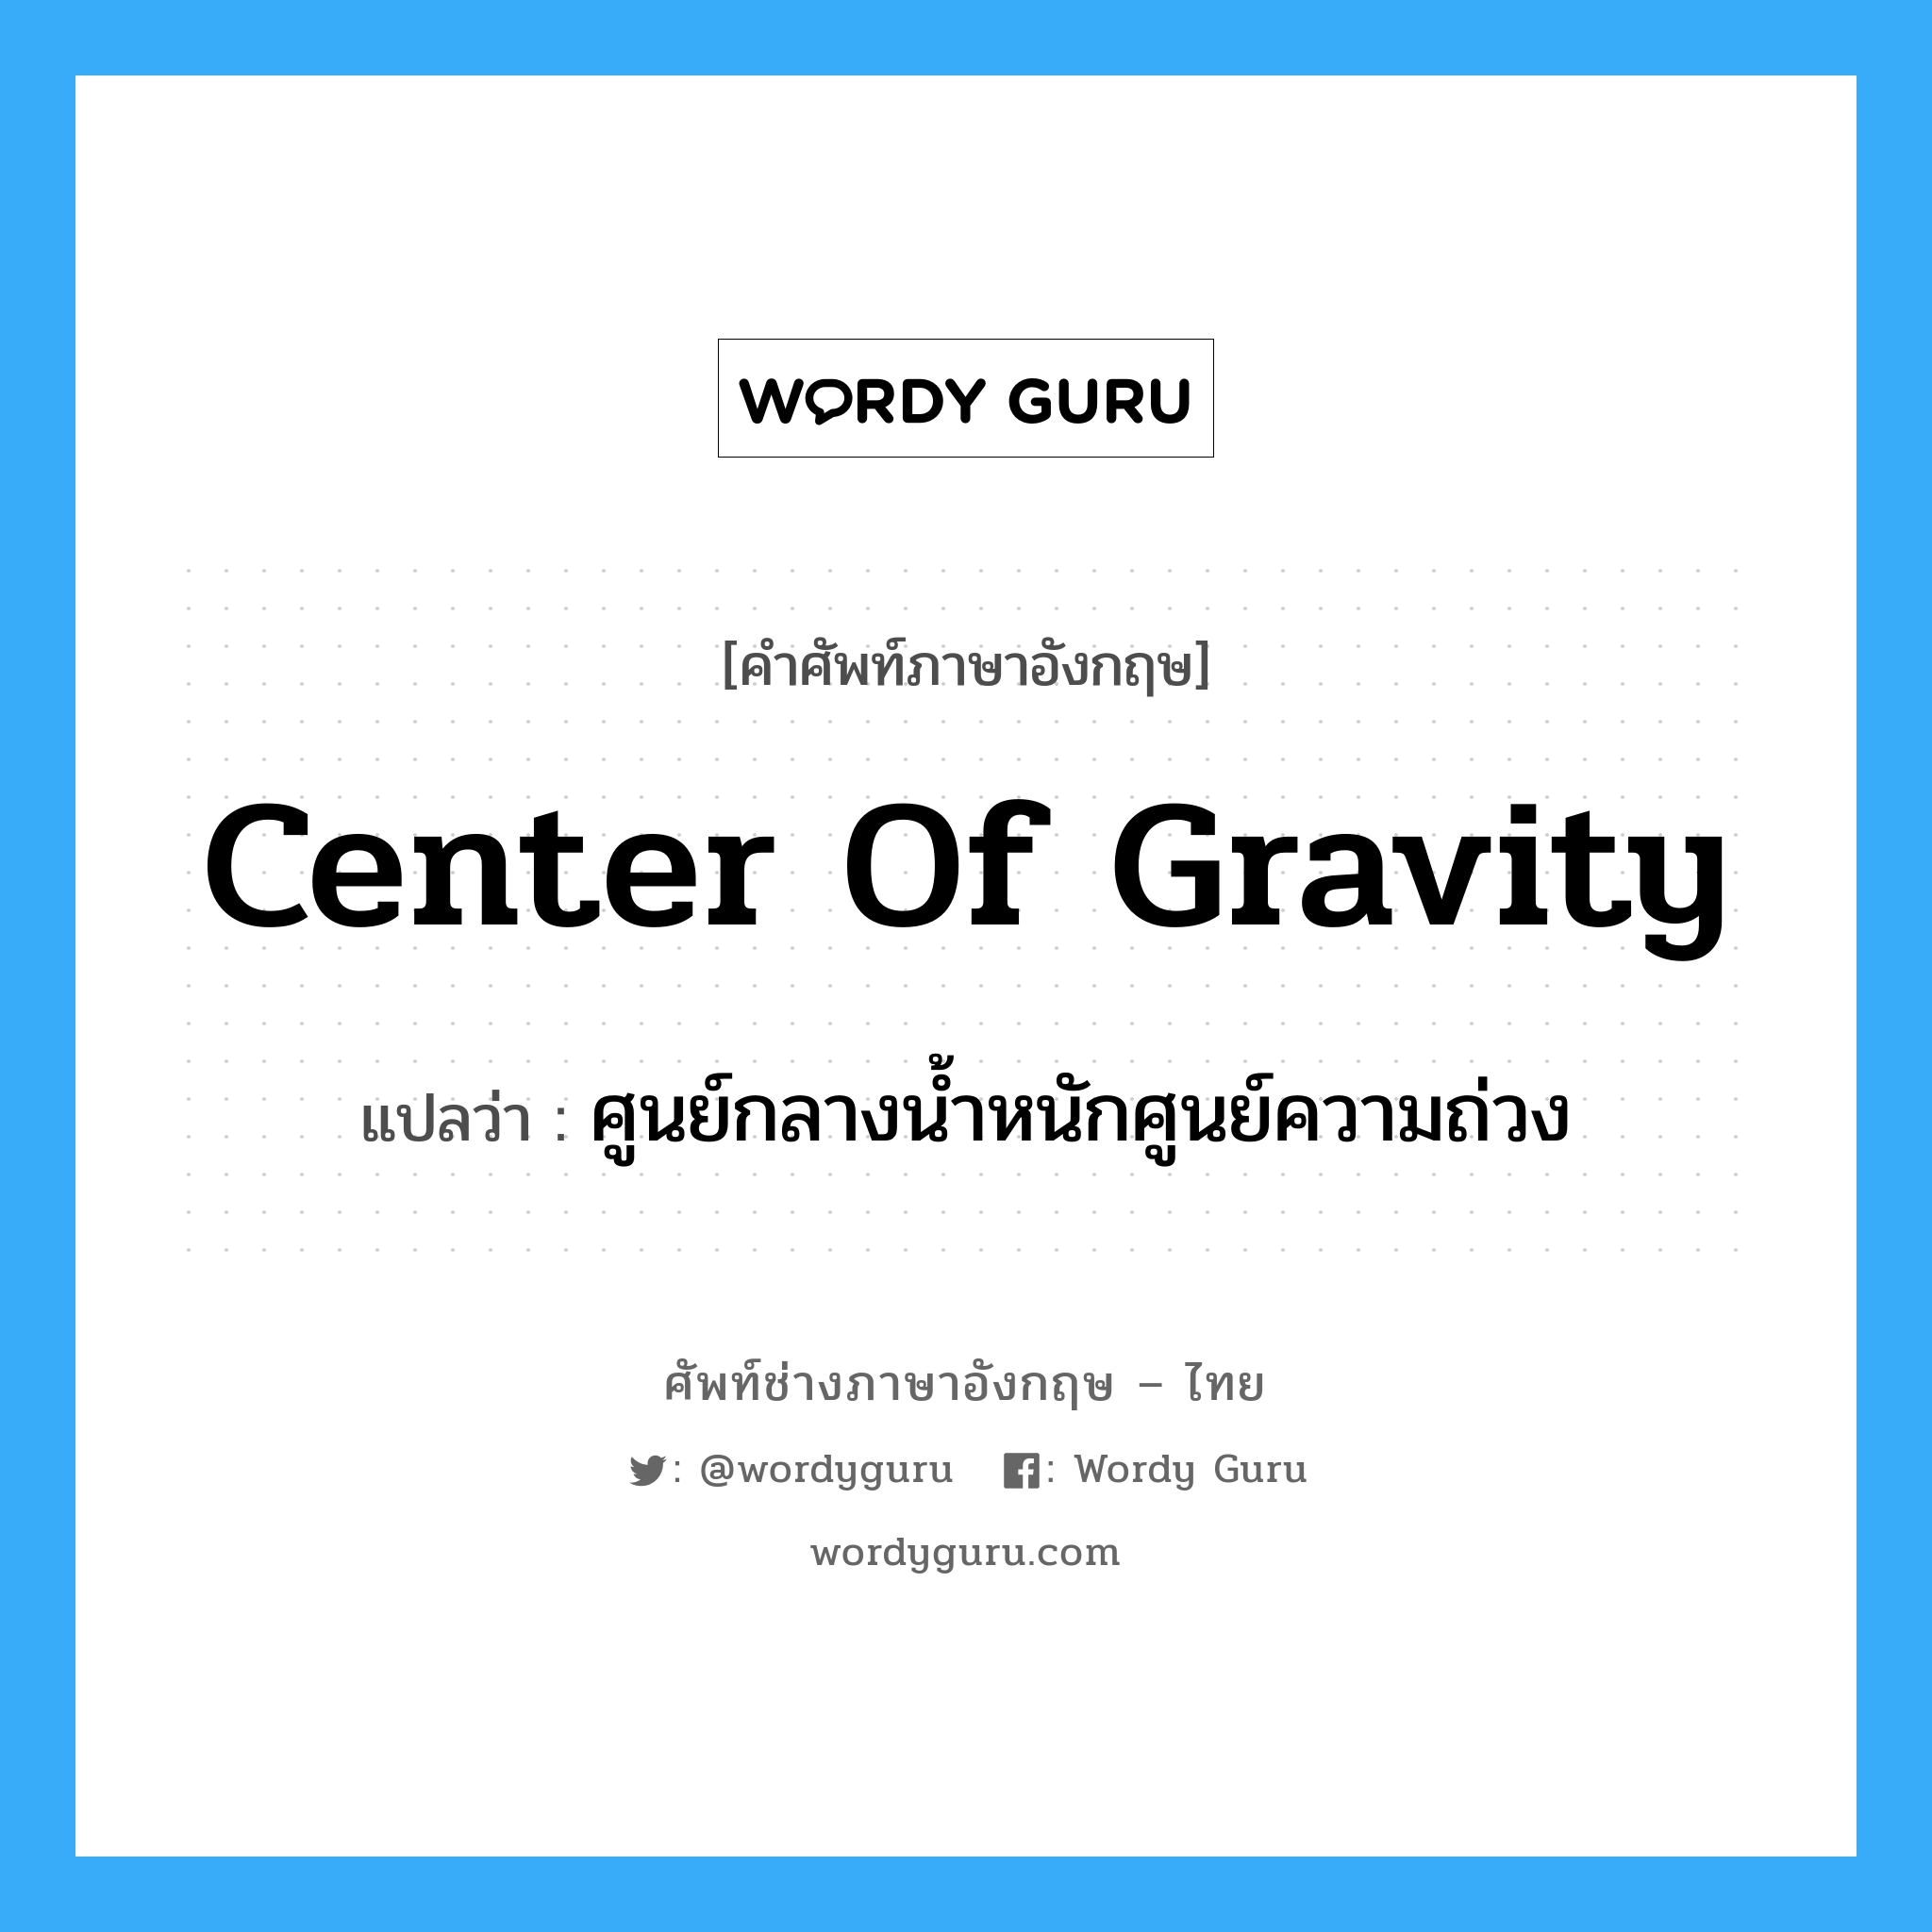 ศูนย์กลางน้ำหนักศูนย์ความถ่วง ภาษาอังกฤษ?, คำศัพท์ช่างภาษาอังกฤษ - ไทย ศูนย์กลางน้ำหนักศูนย์ความถ่วง คำศัพท์ภาษาอังกฤษ ศูนย์กลางน้ำหนักศูนย์ความถ่วง แปลว่า center of gravity